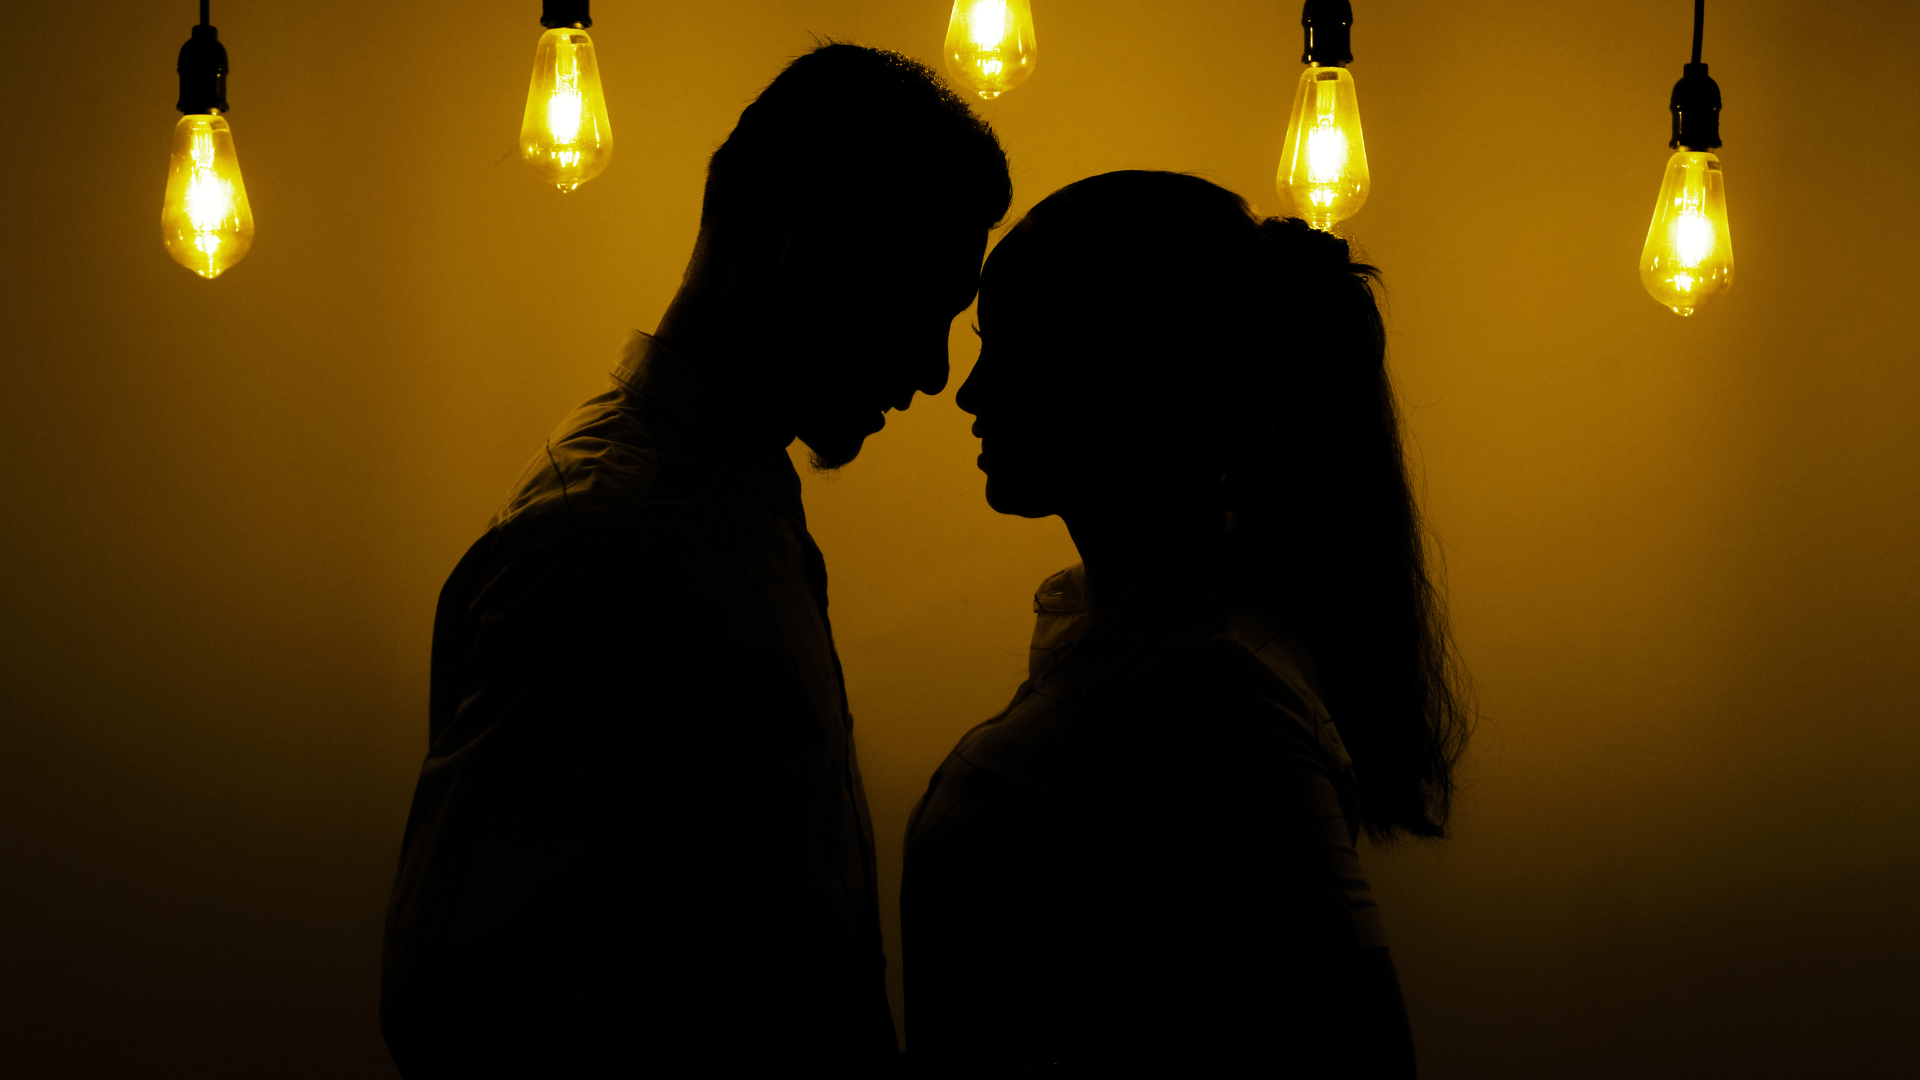 Silhueta de um casal romântico com as faces próximas, em um cenário amarelo escuro com luzes.